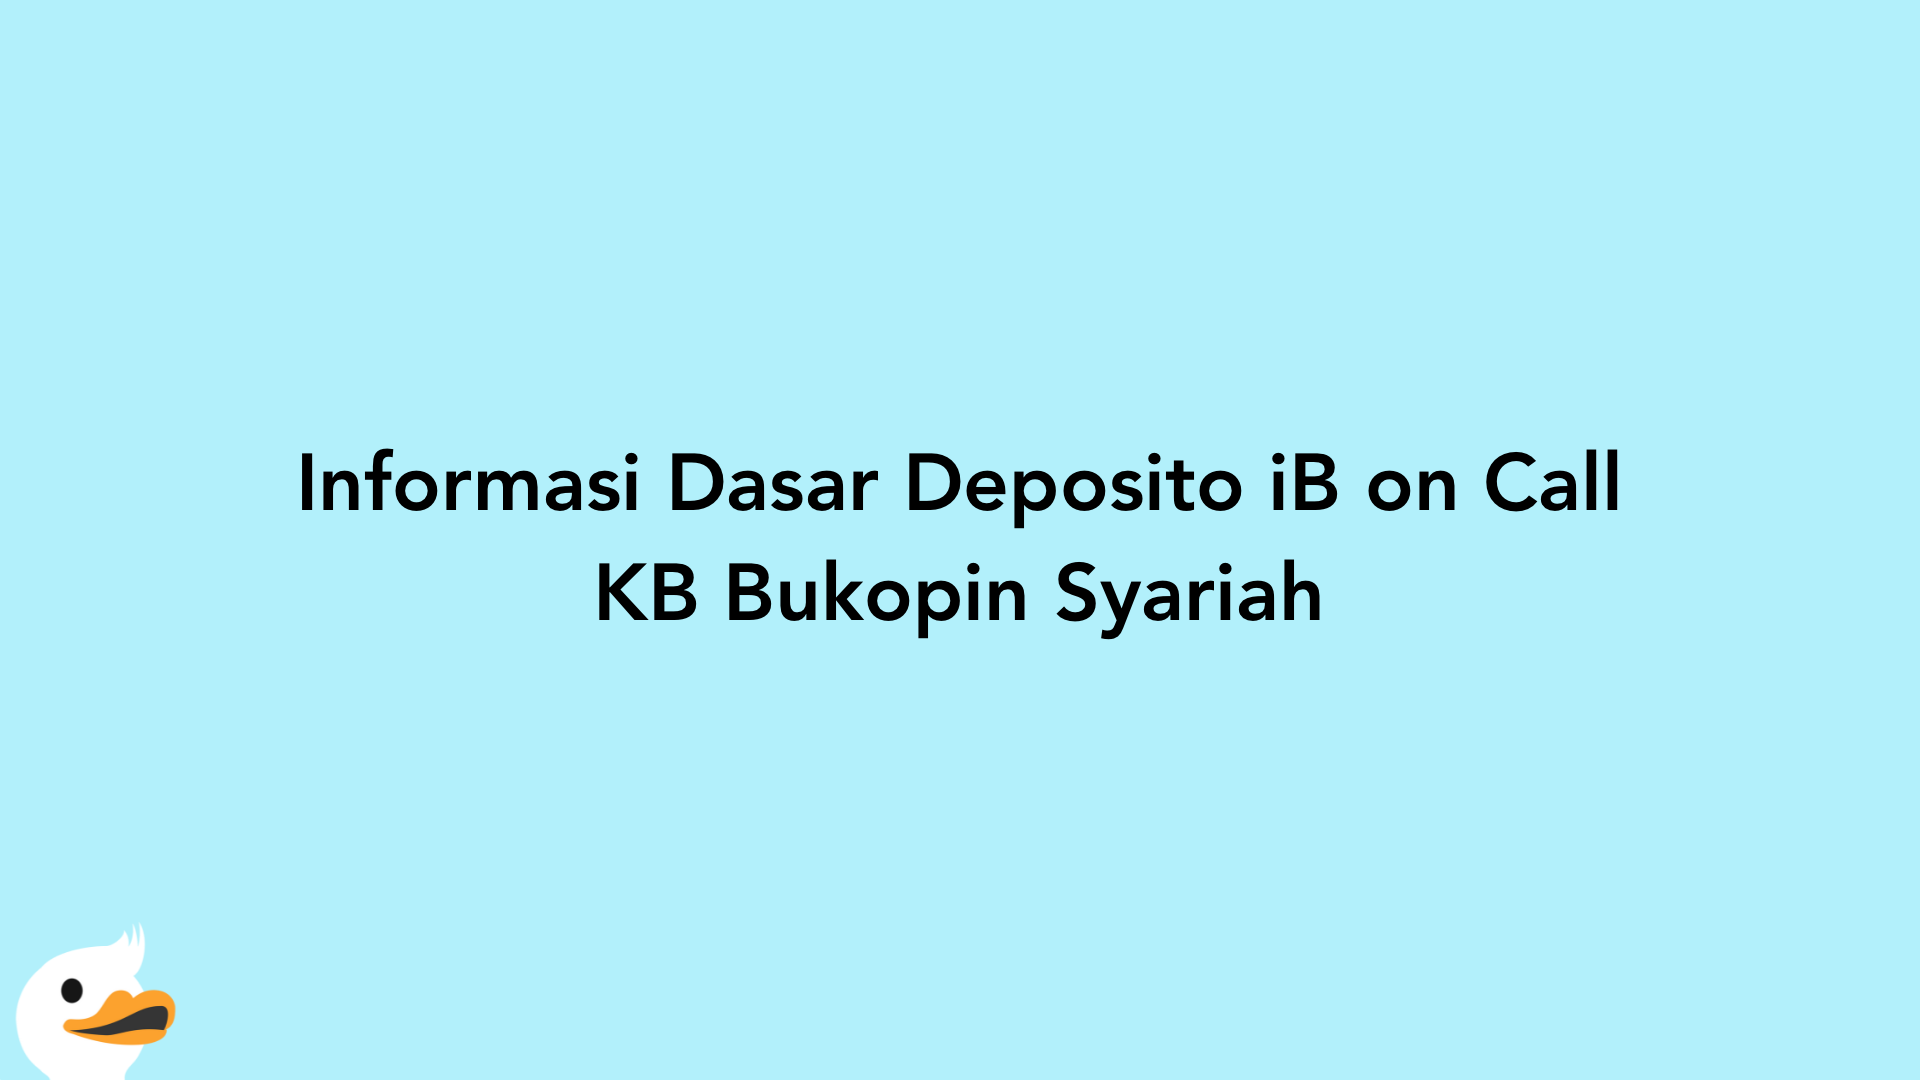 Informasi Dasar Deposito iB on Call KB Bukopin Syariah